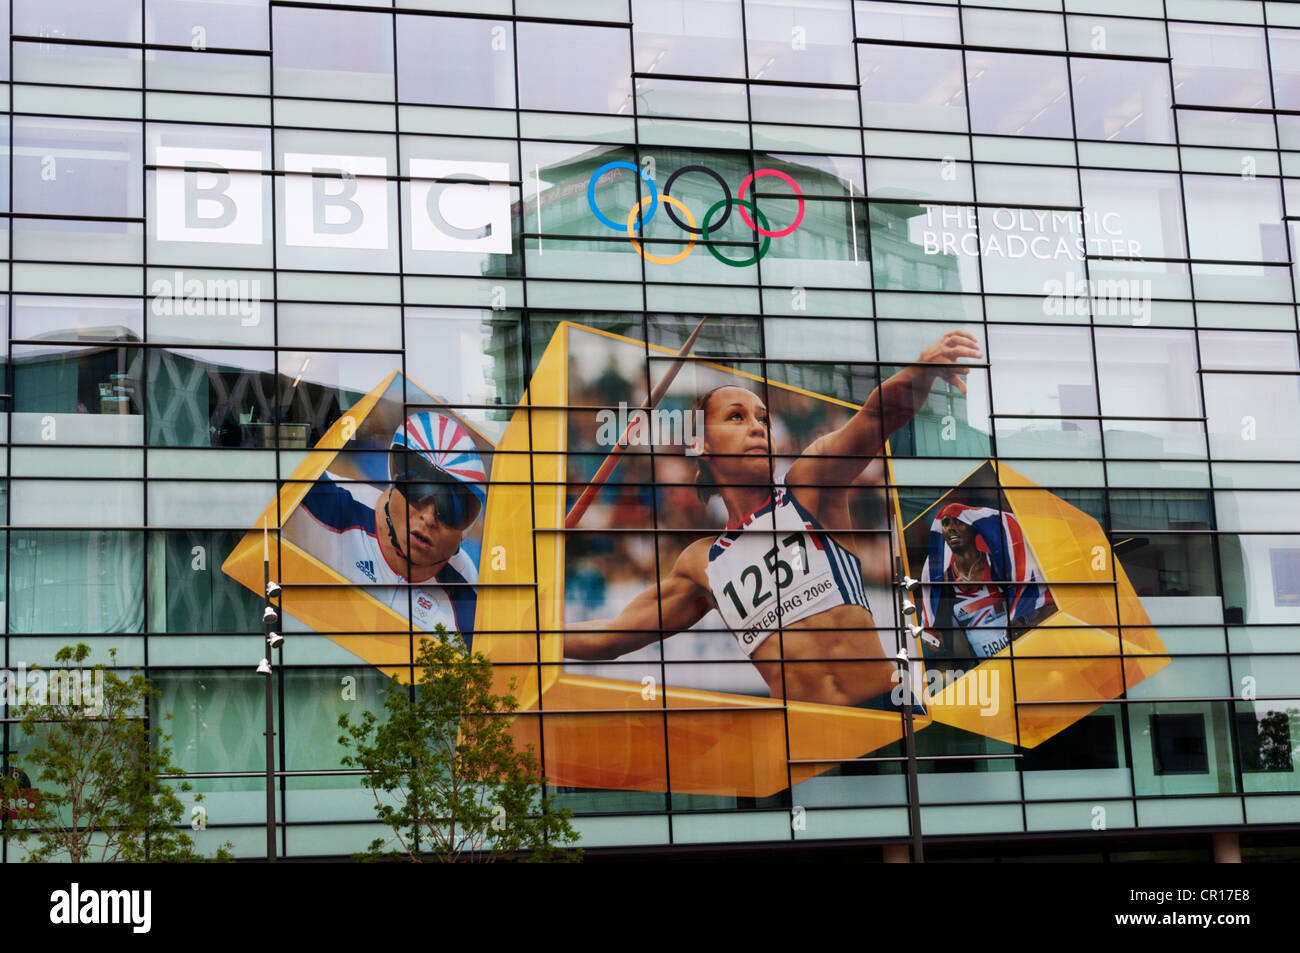 Eine große Werbung für die Fenster von einem BBC Gebäude Werbung des Unternehmens Olympische Berichterstattung. Stockfoto